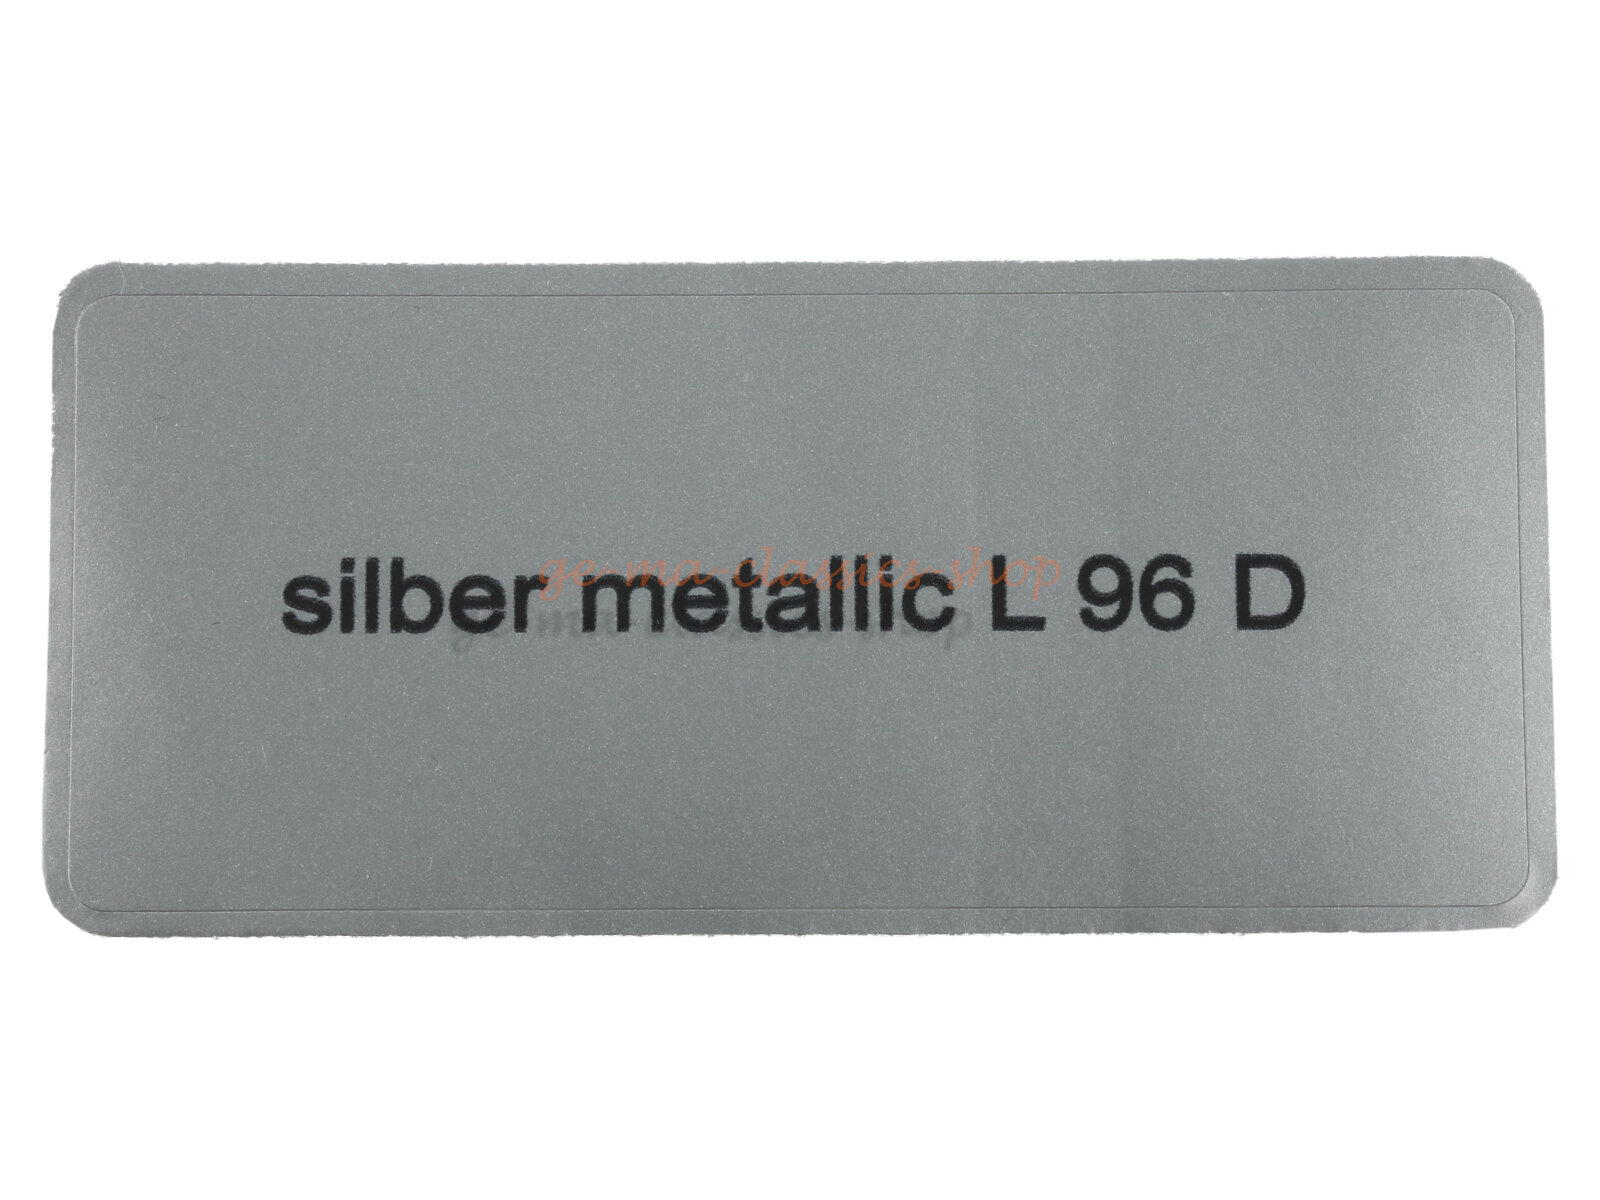 Aufkleber "silber metallic L 96 D" Farbcode Sticker